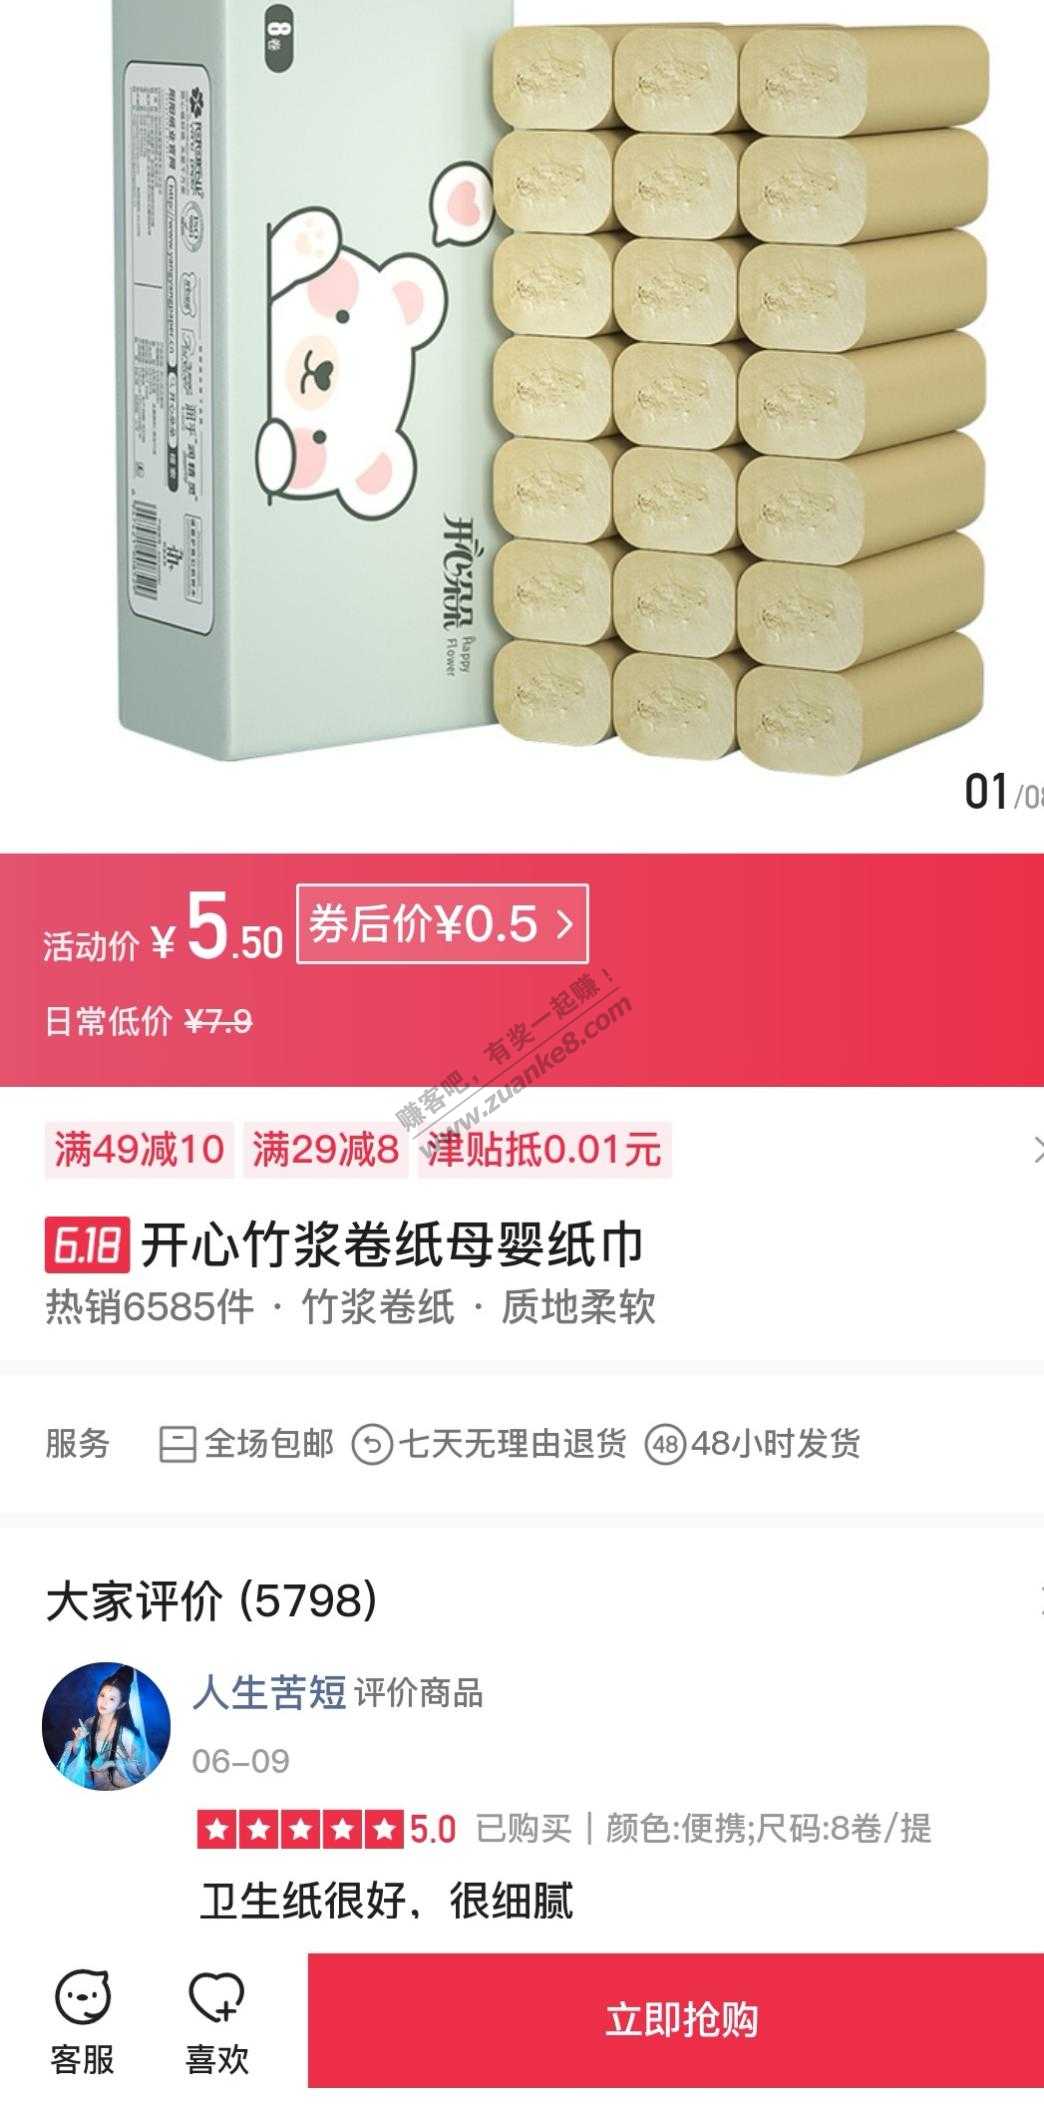 0元买腾讯旗下又一电商平台-惠小助(52huixz.com)